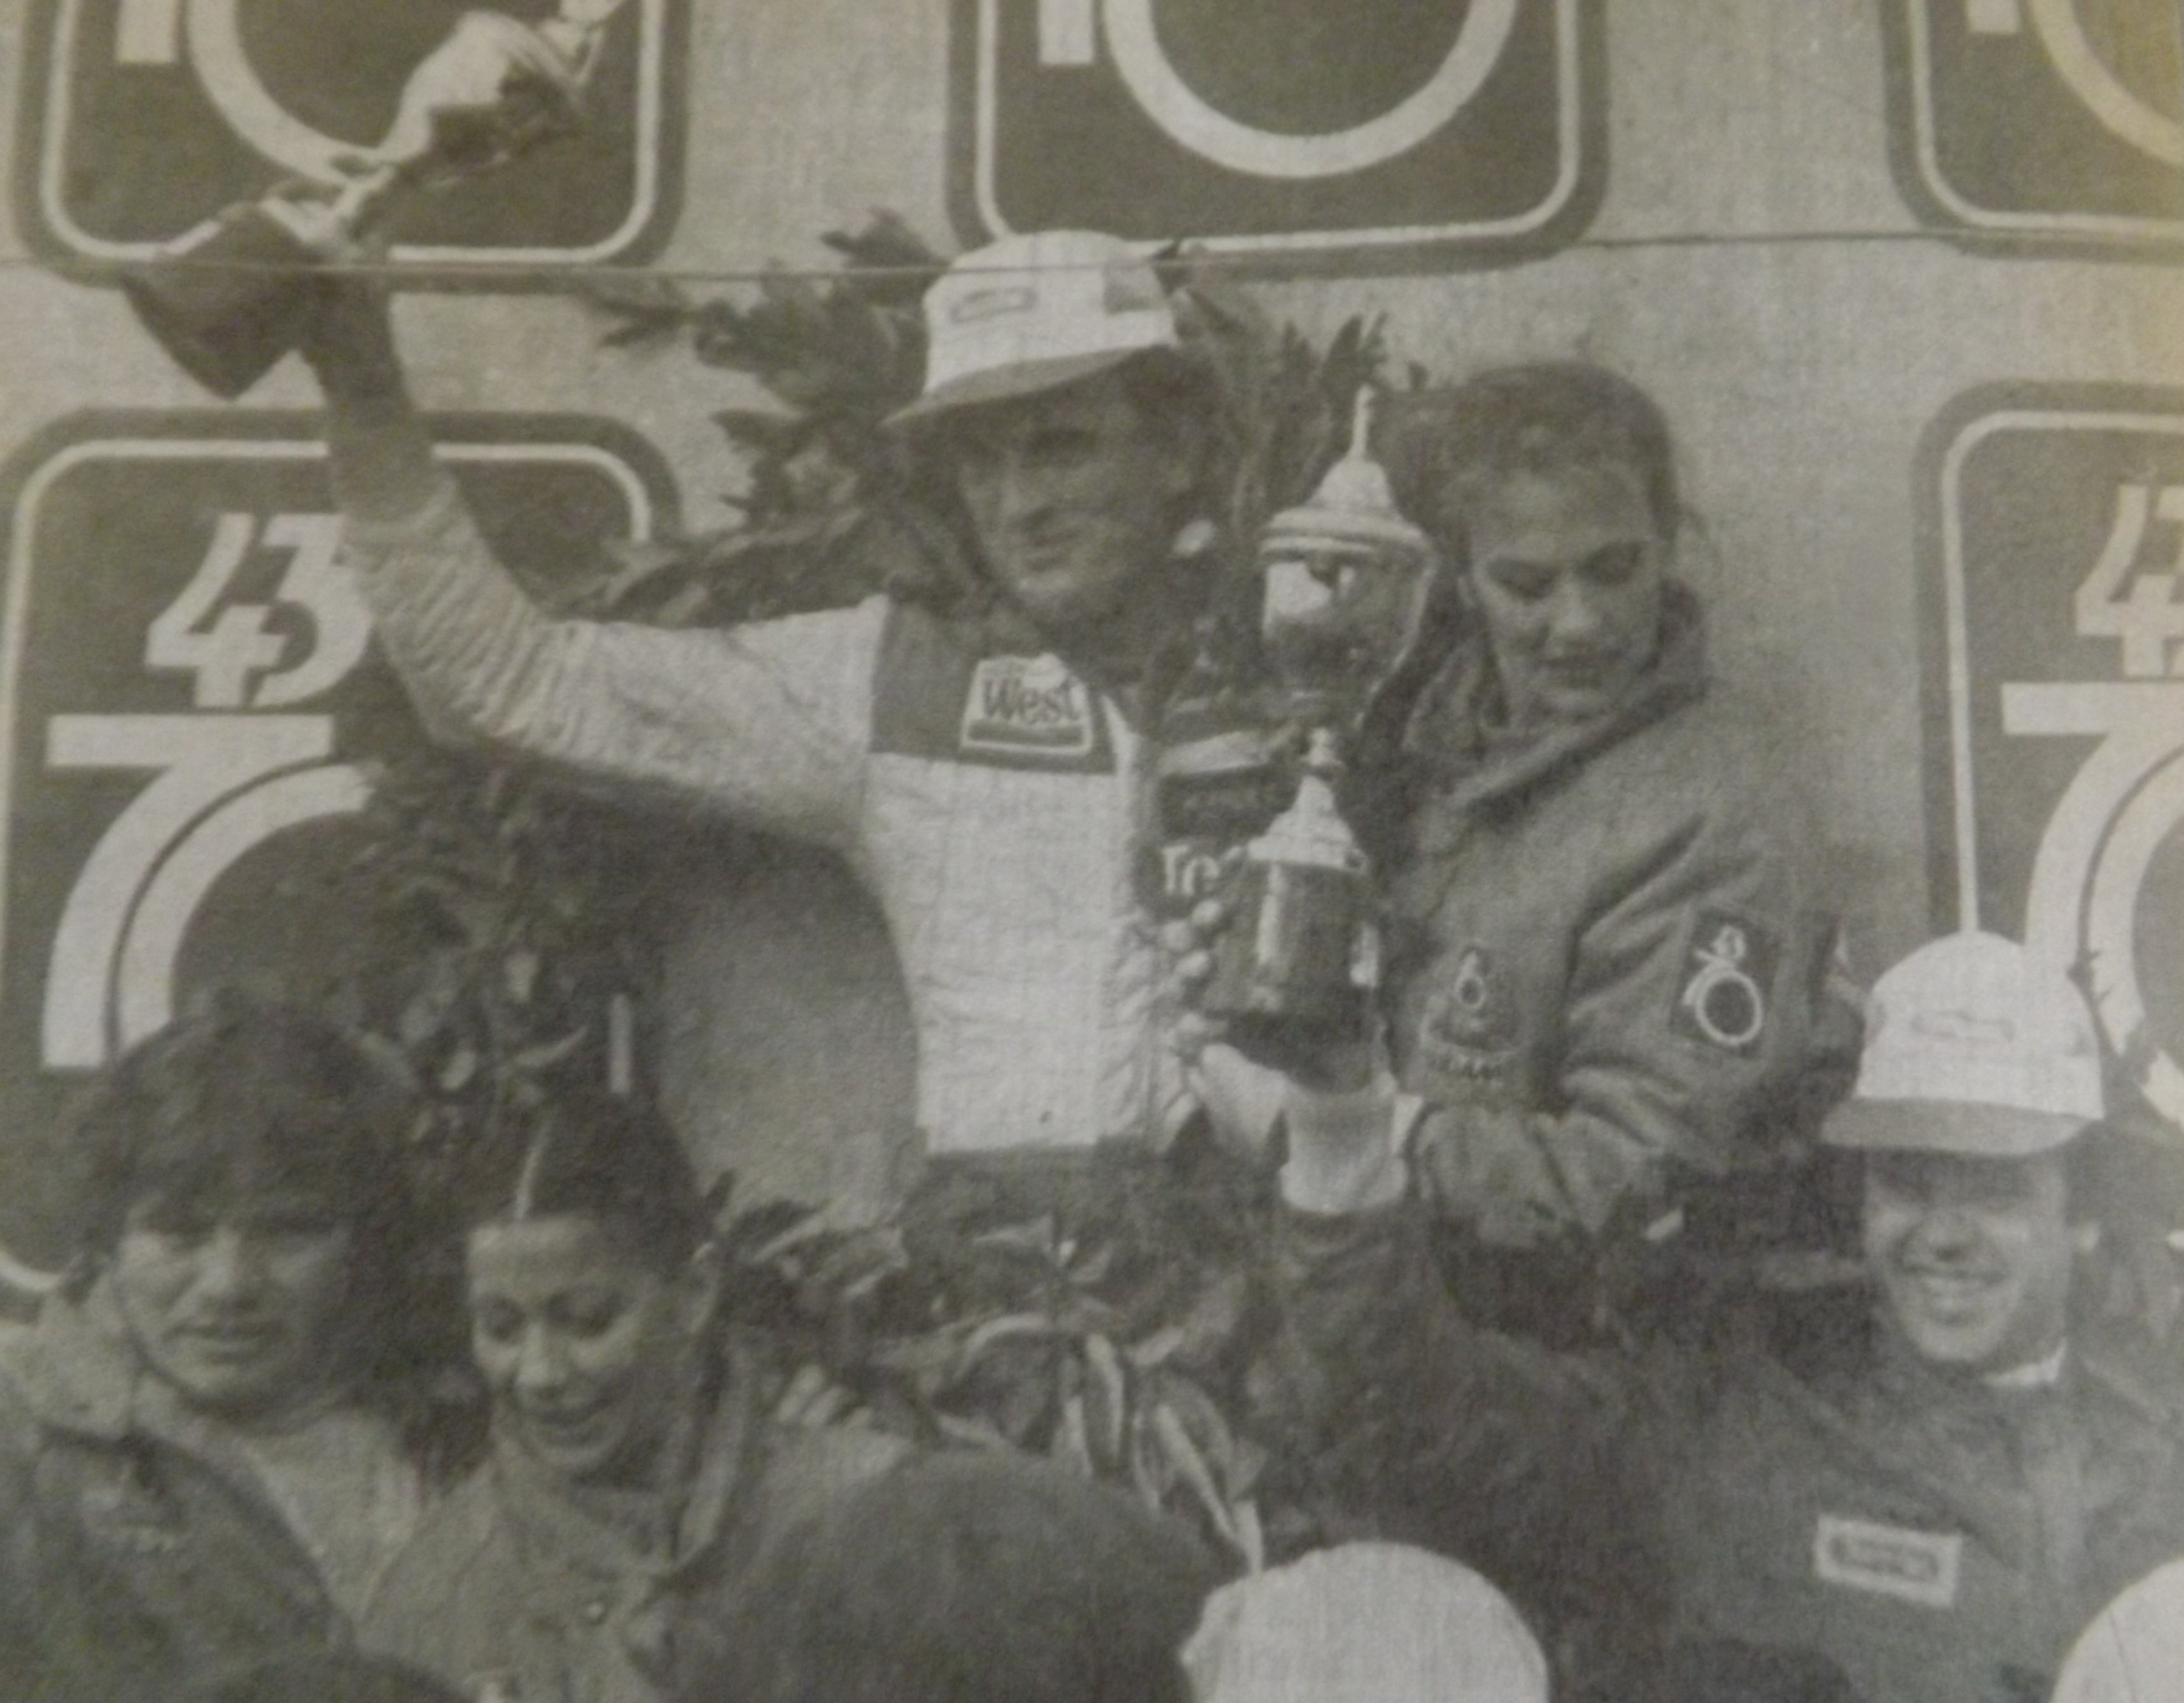 Podio de TC 2000 en 1983 con Traverso ganador en Las Flores. Di Palma fue segundo y Mario Gayraud, tercero (Archivo CORSA)